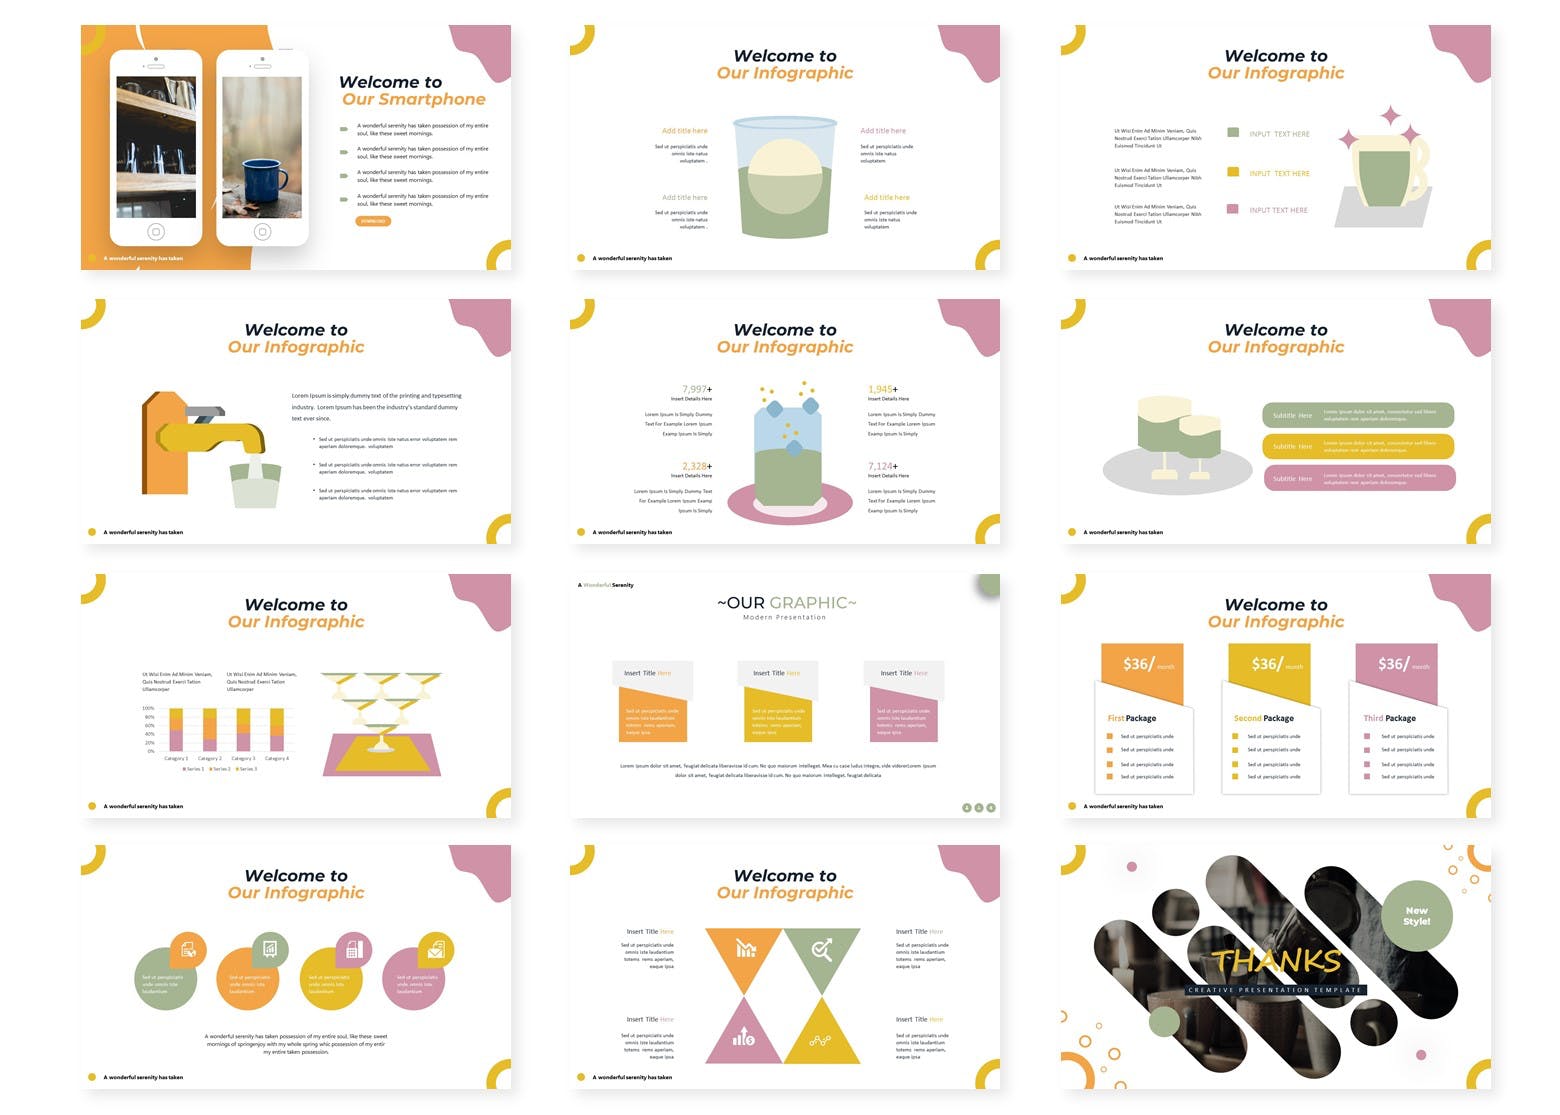 咖啡/咖啡厅品牌宣传&咖啡培训课程PPT幻灯片模板 Muugie | Powerpoint Template插图(3)